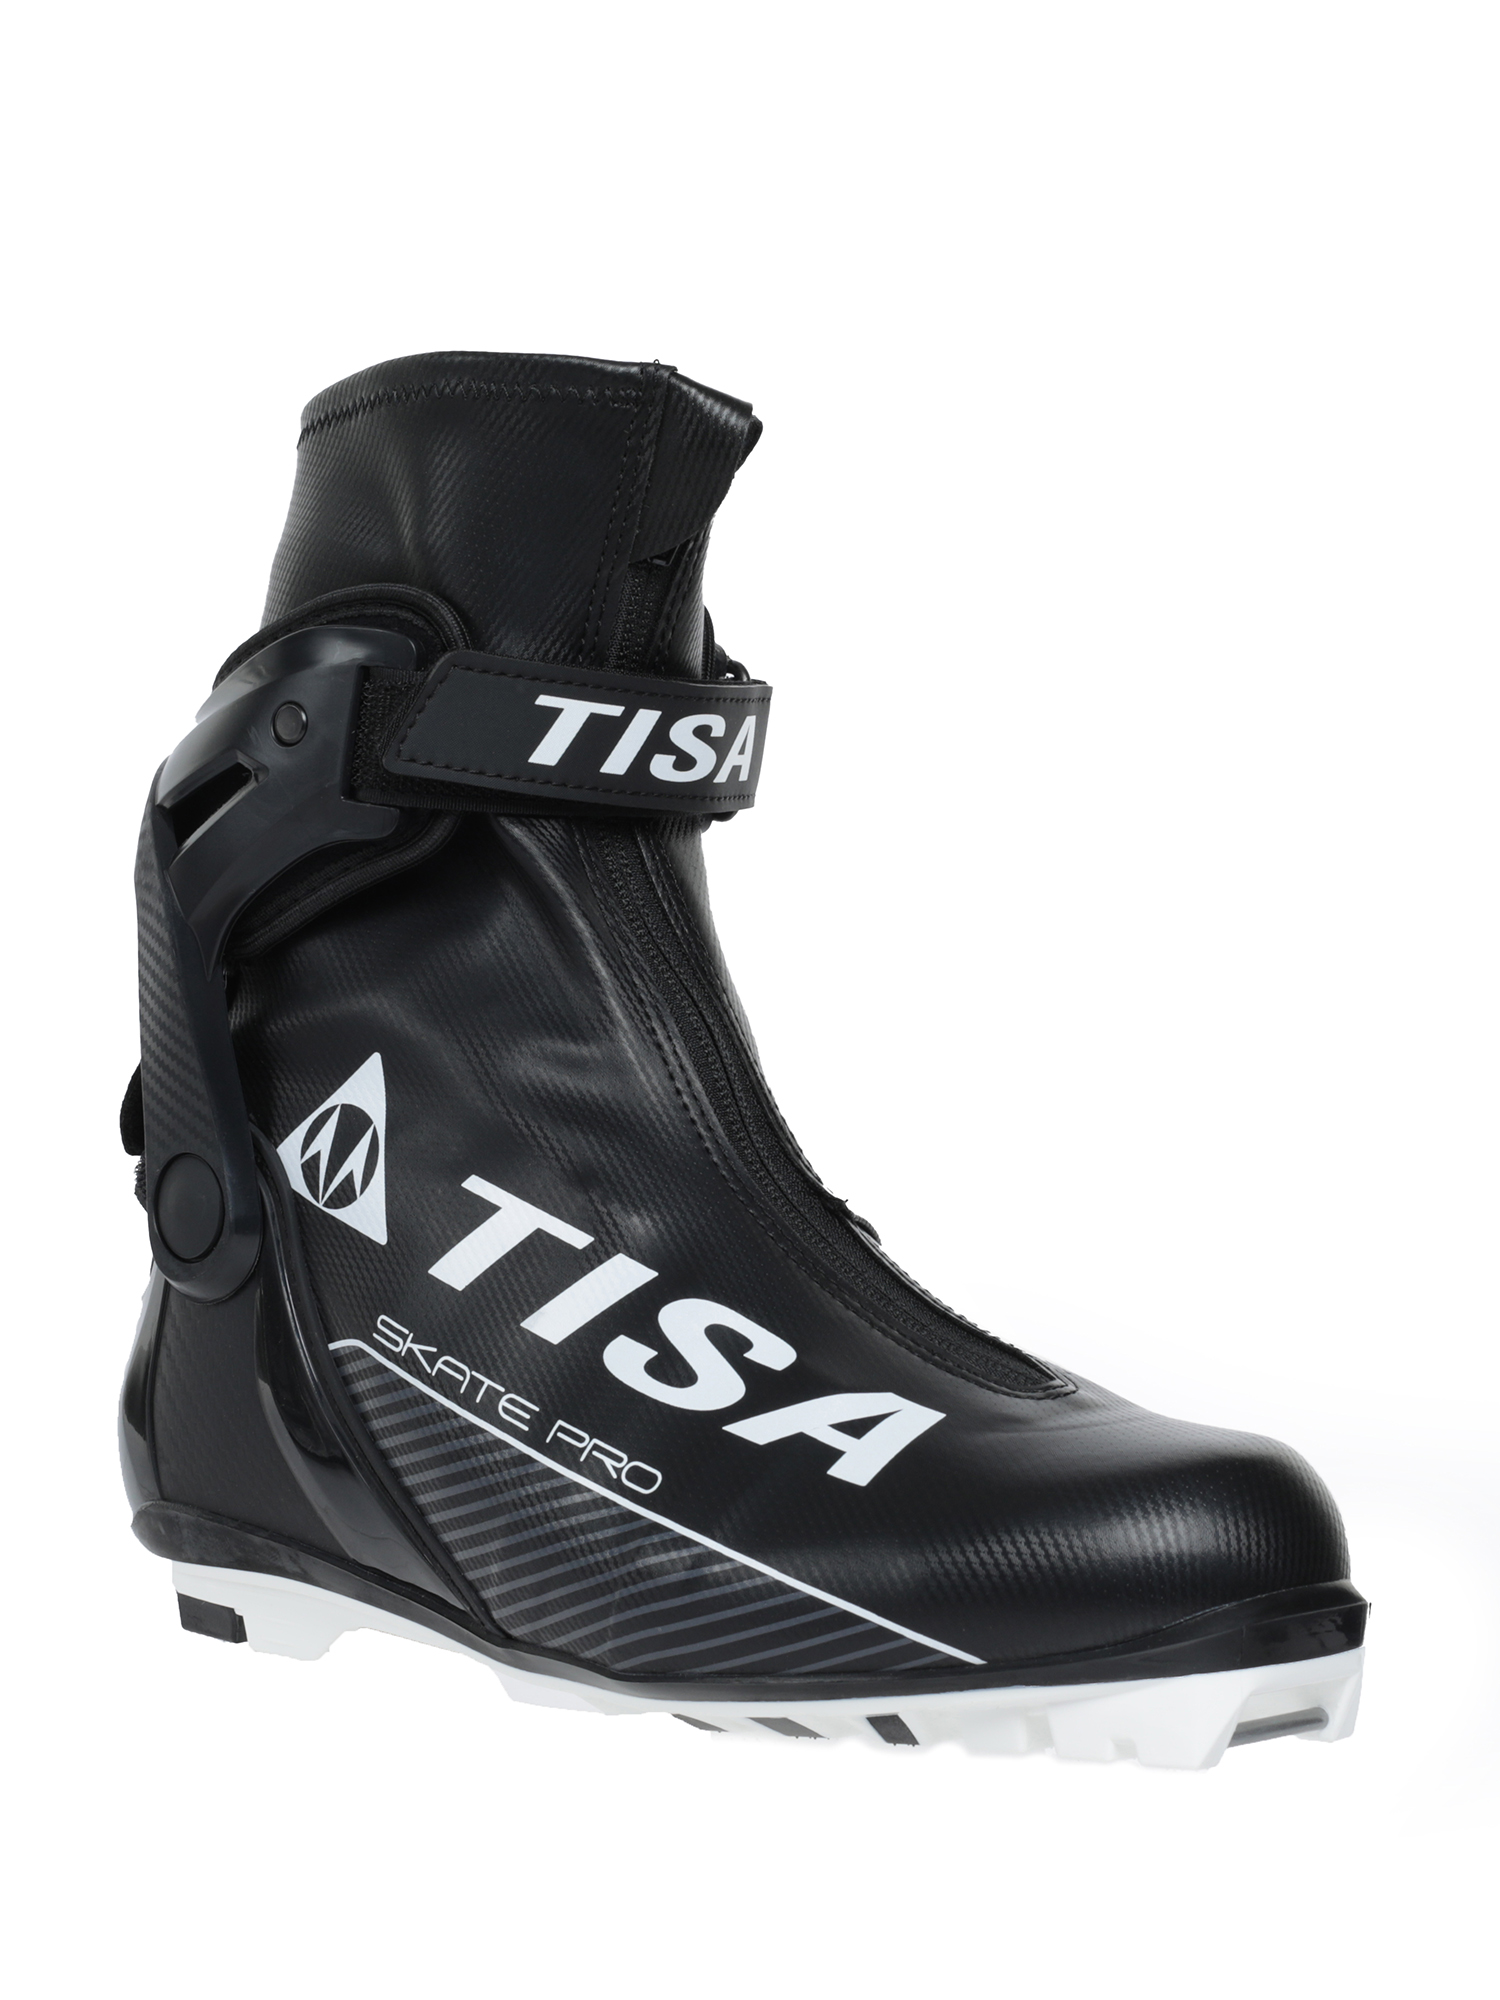 Ботинки лыжные TISA Pro Skate NNN